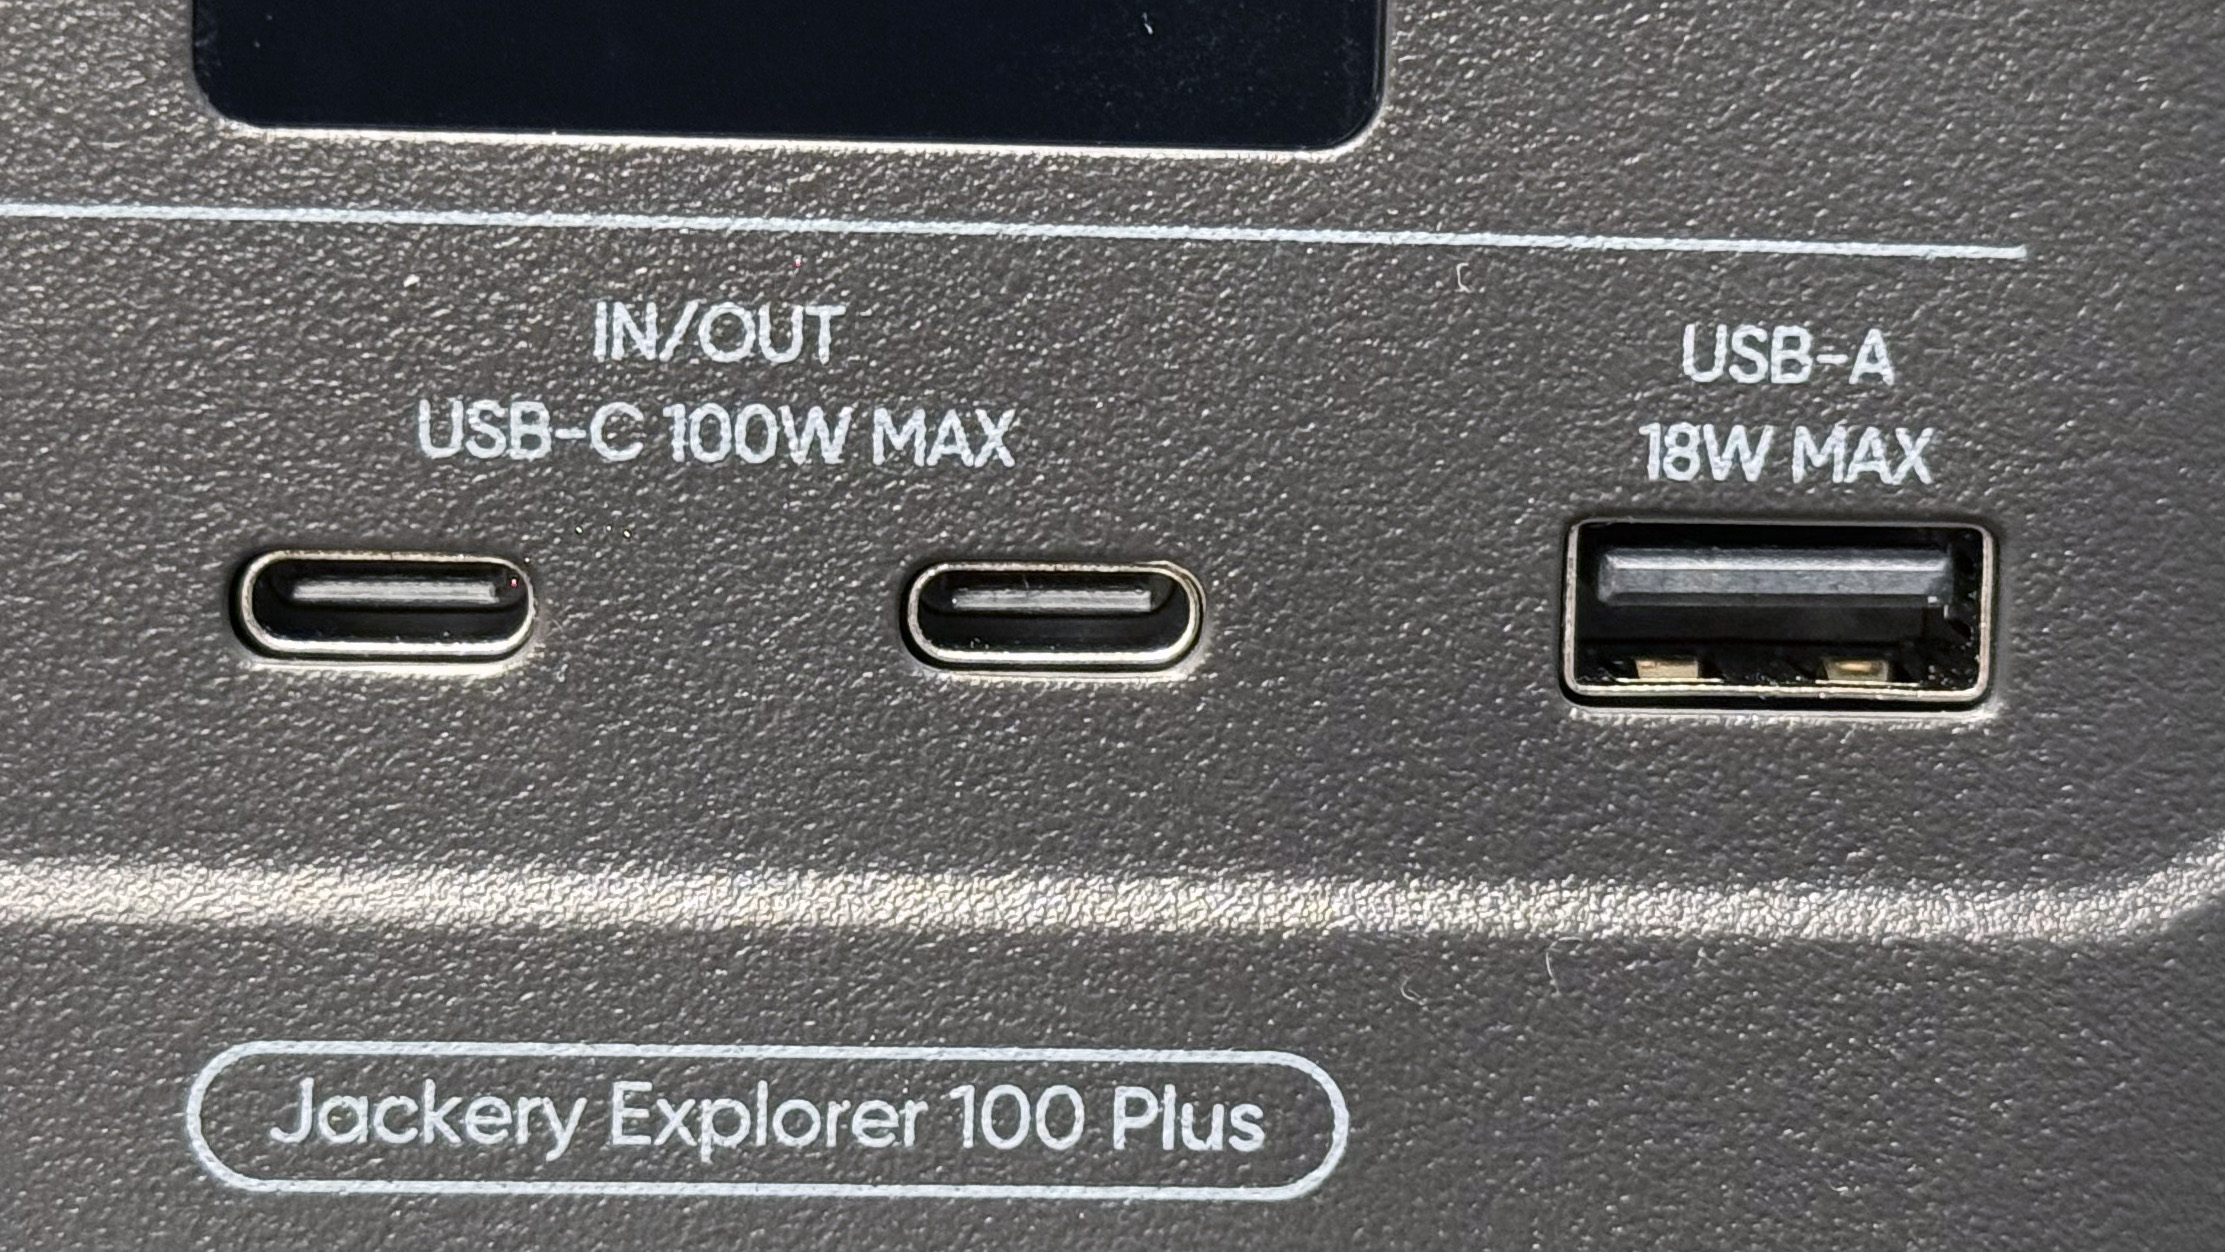 Jackery Explorer 100 Plus USB sockets